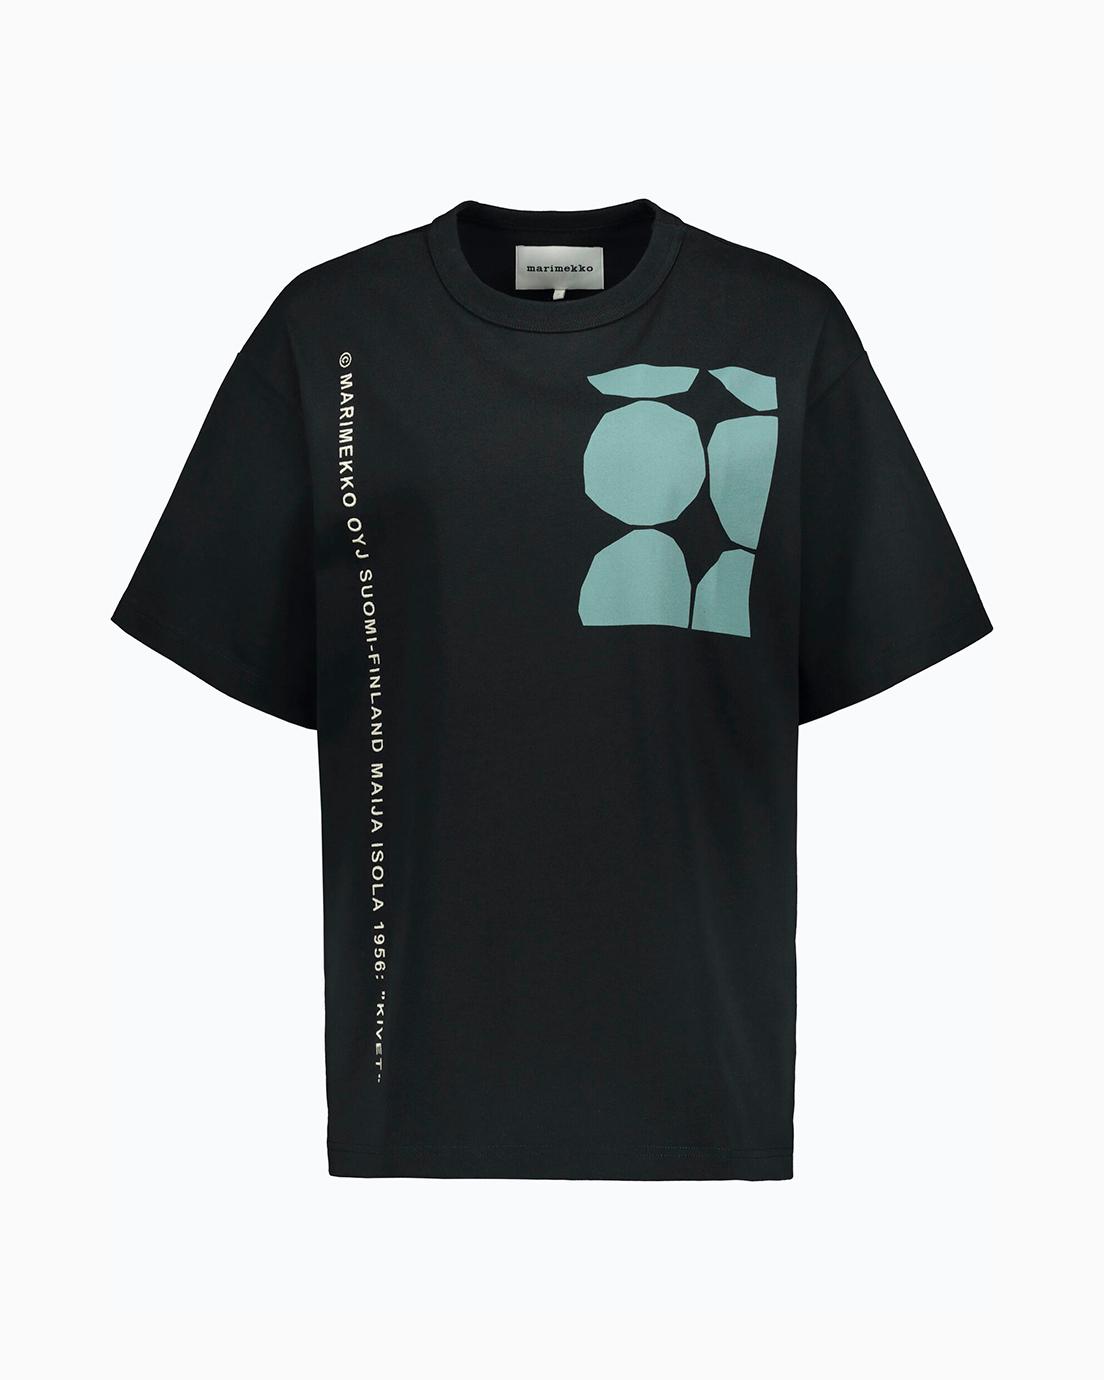 Tシャツ（キヴェット）25,300円（税込）